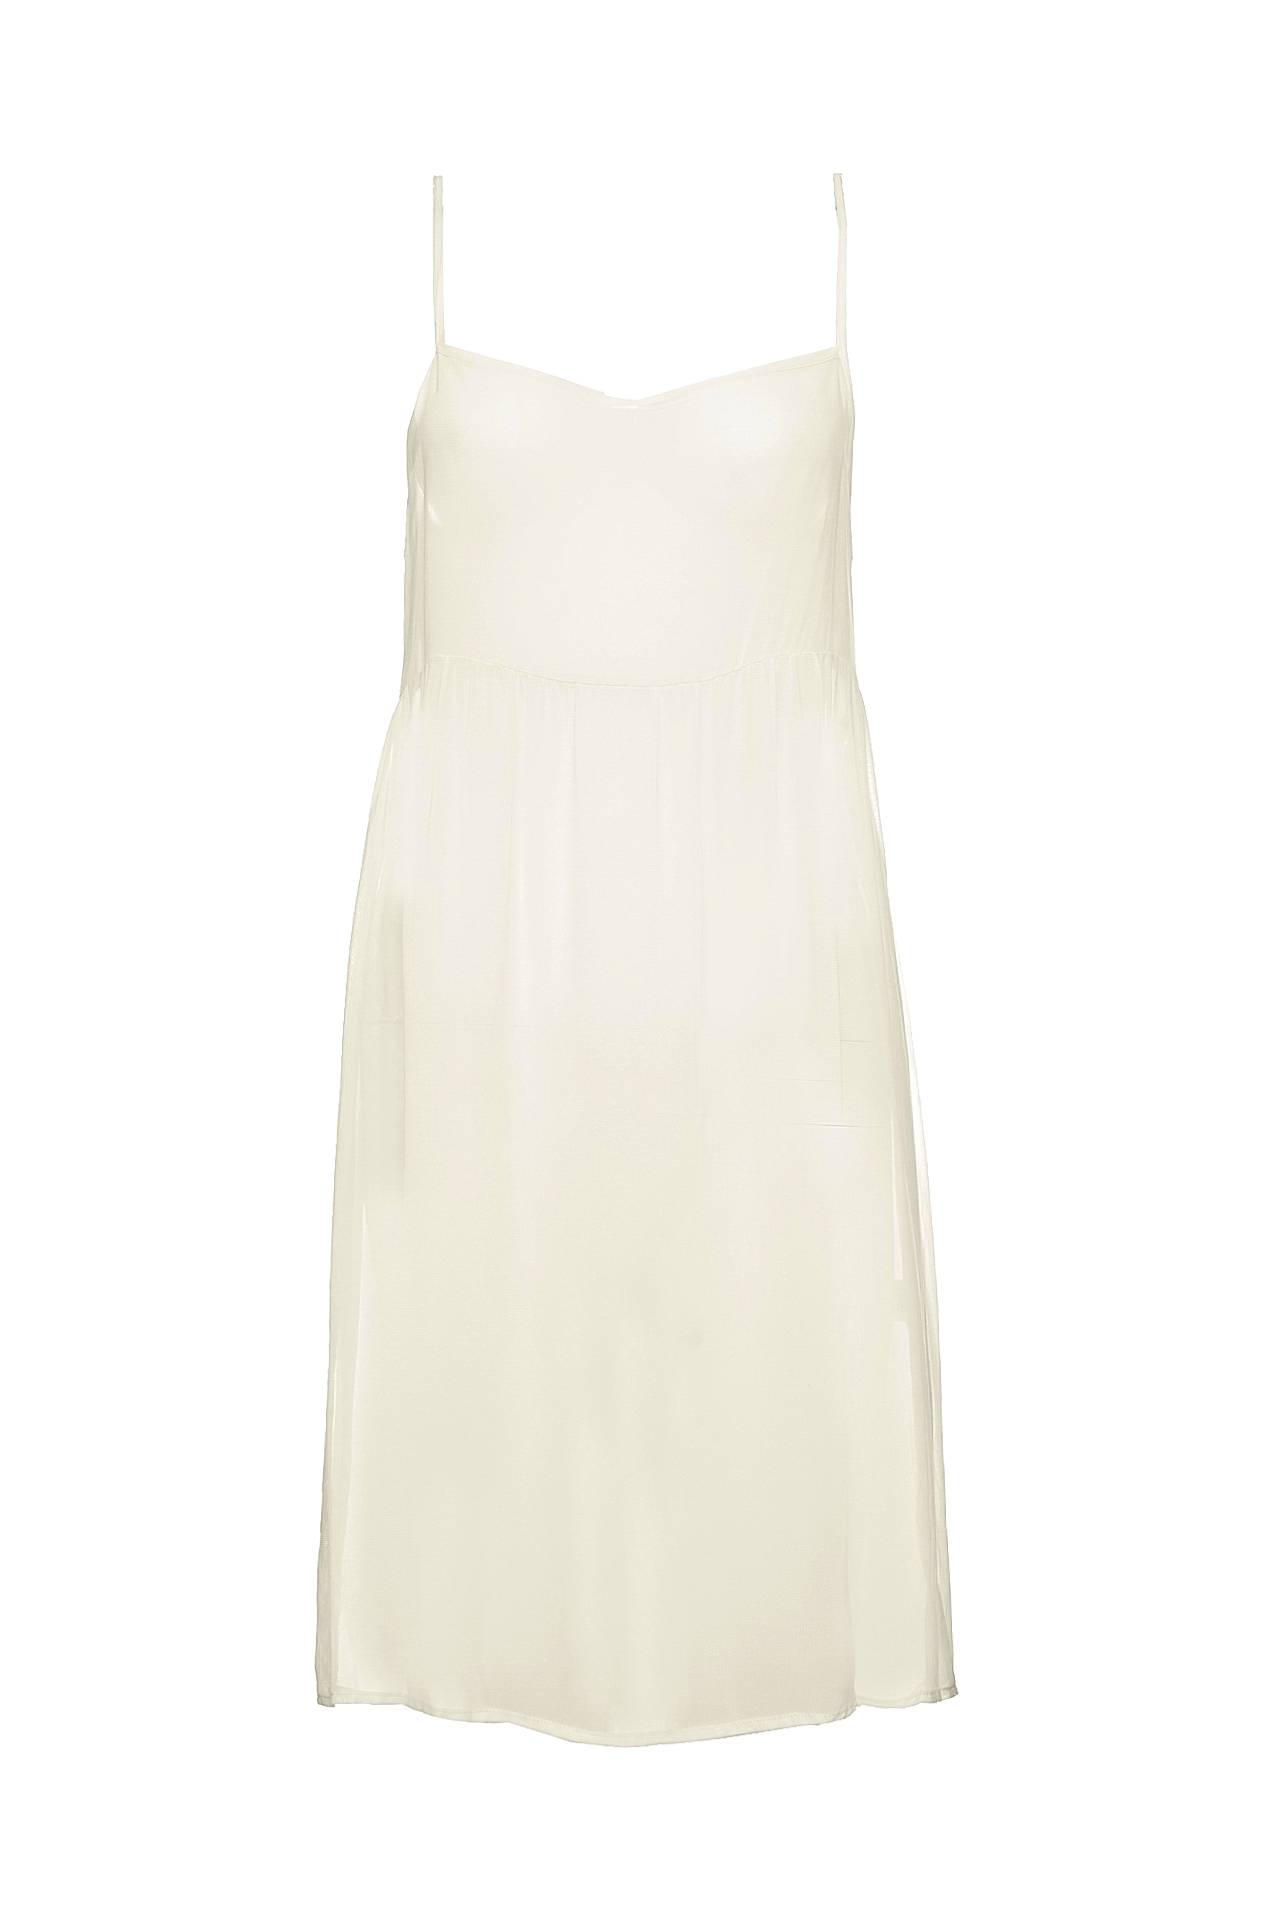 Одежда женская Платье TWIN-SET (T21950/10.1). Купить за 5280 руб.